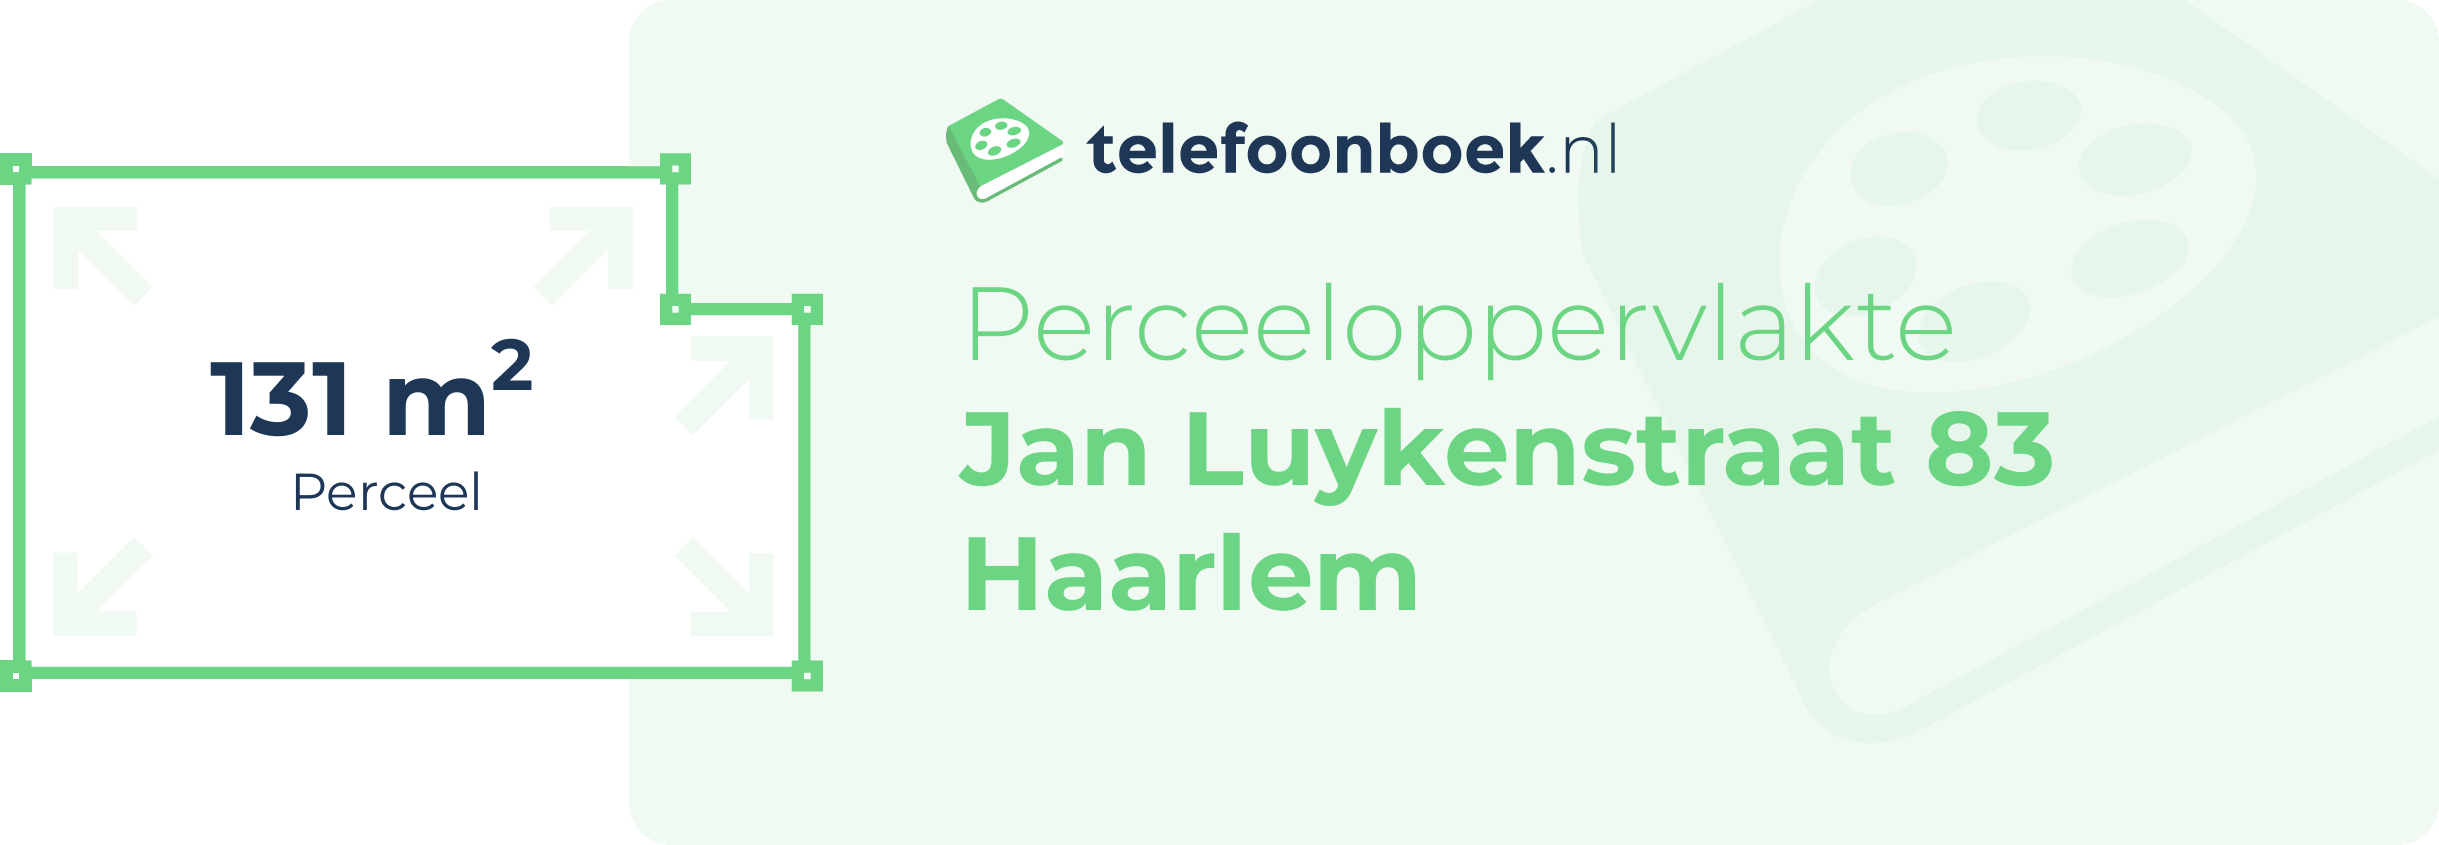 Perceeloppervlakte Jan Luykenstraat 83 Haarlem